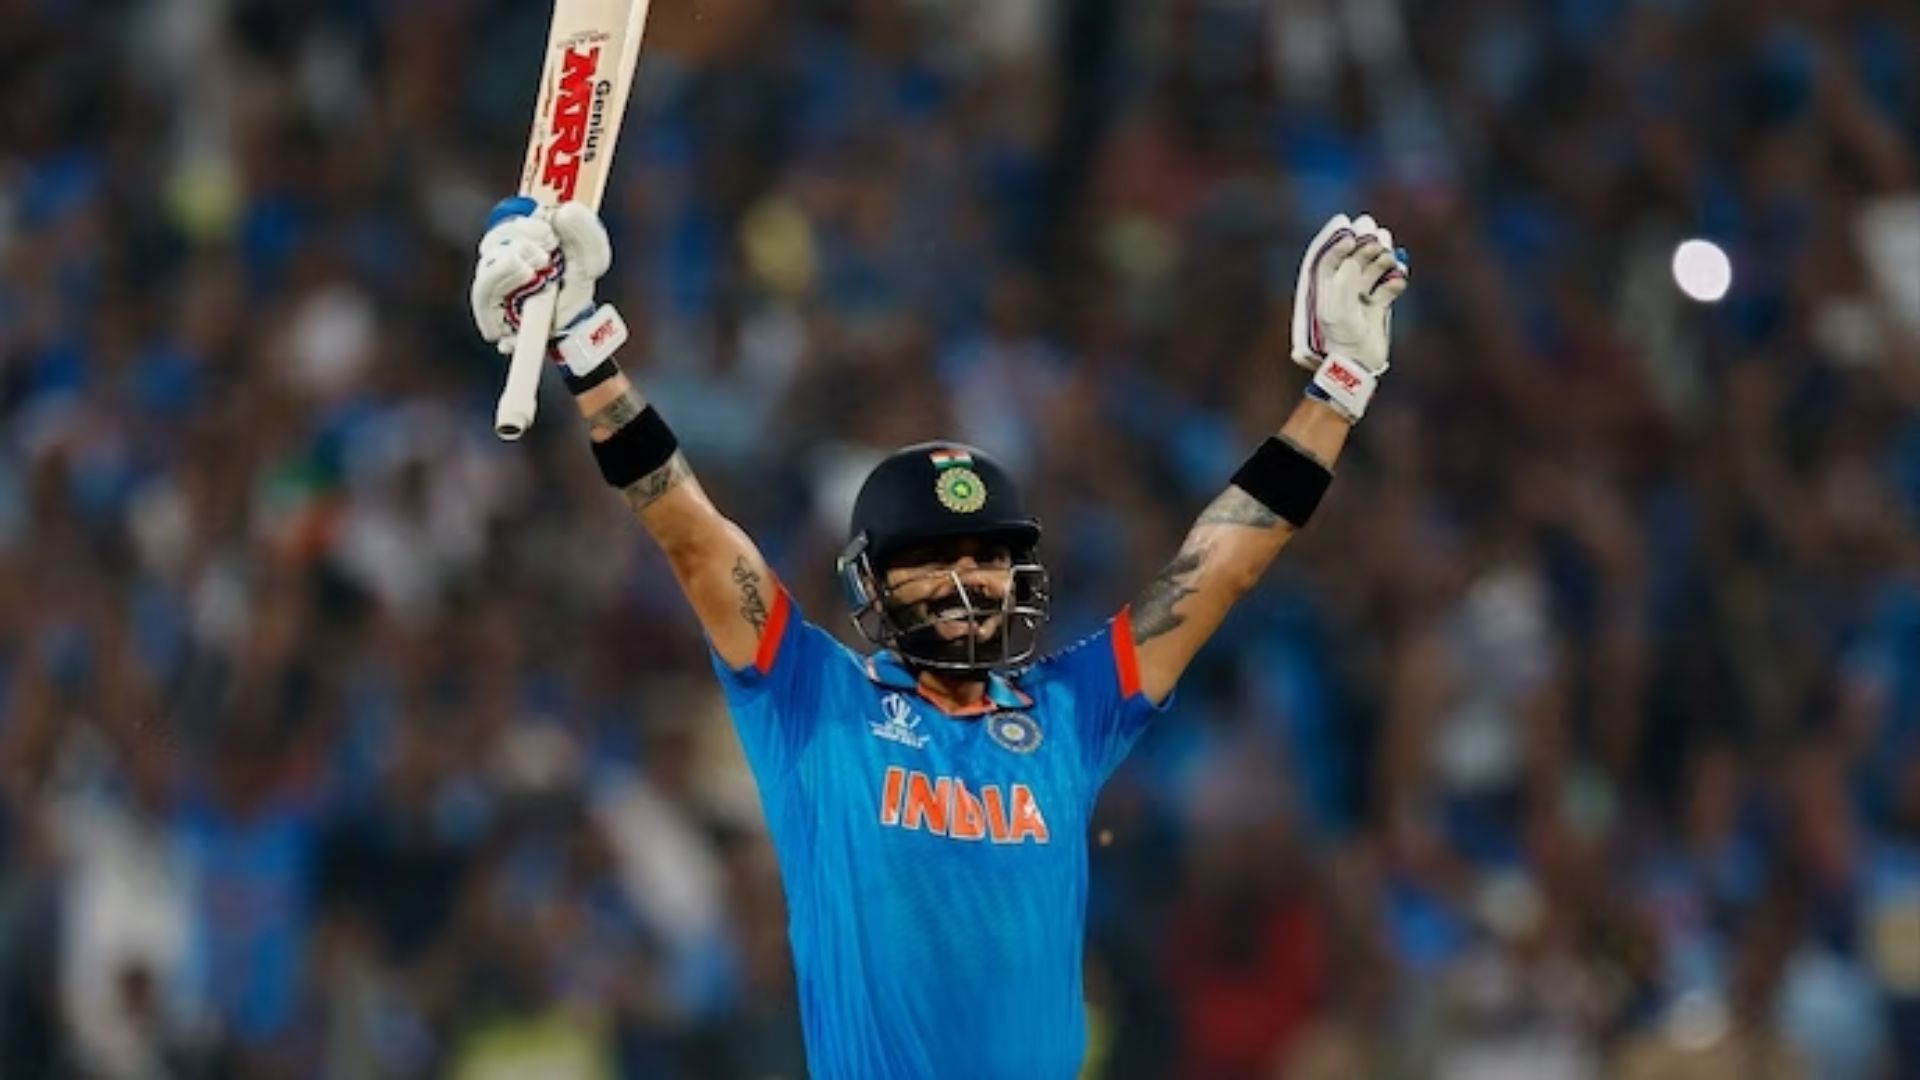 IND vs BAN: विराट कोहली का 48 वां शतक, भारत ने बांग्लादेश को 7 विकेट से हराया